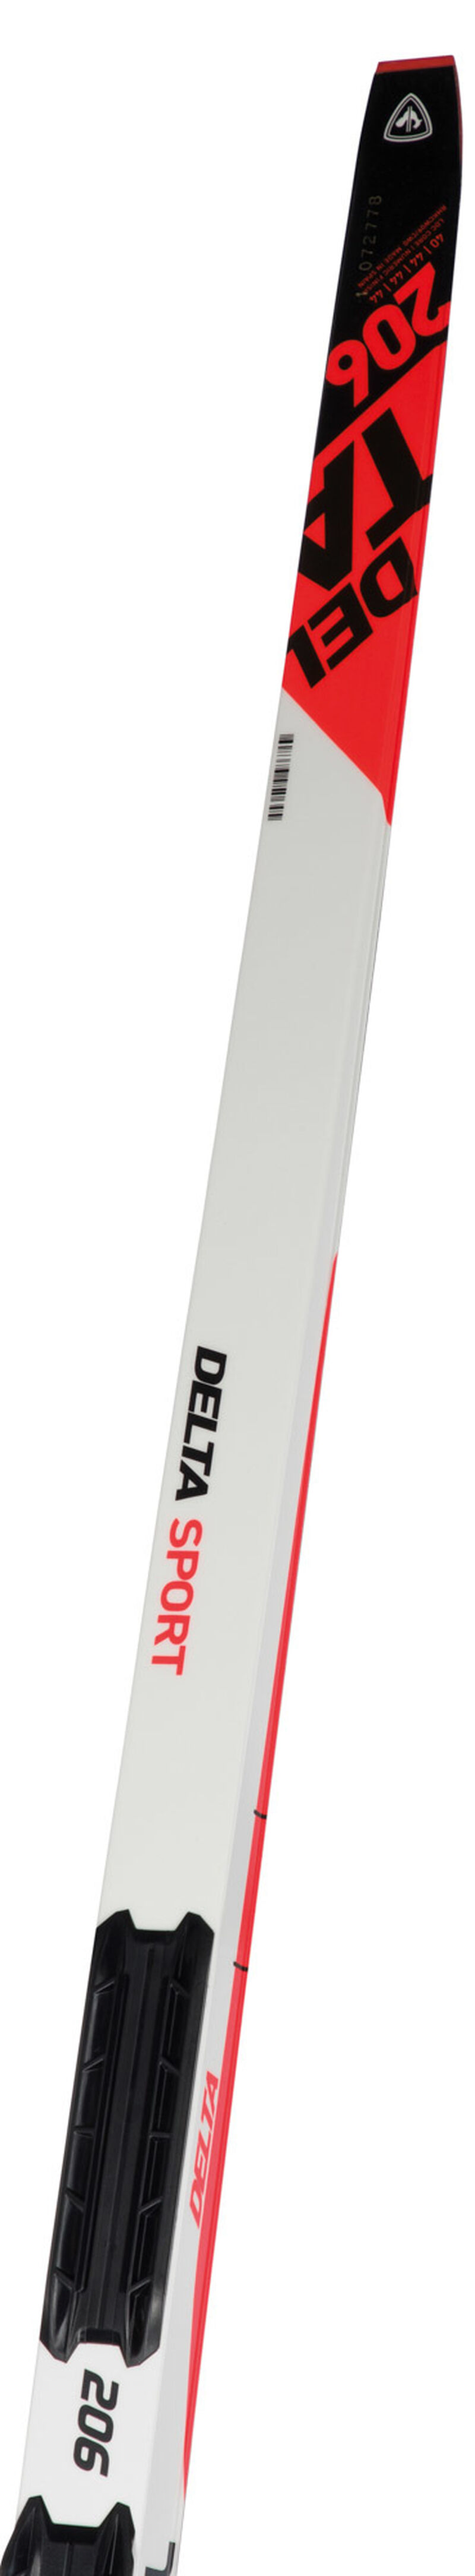 Rossignol Unisex Nordic Skis Delta Sport Classic 